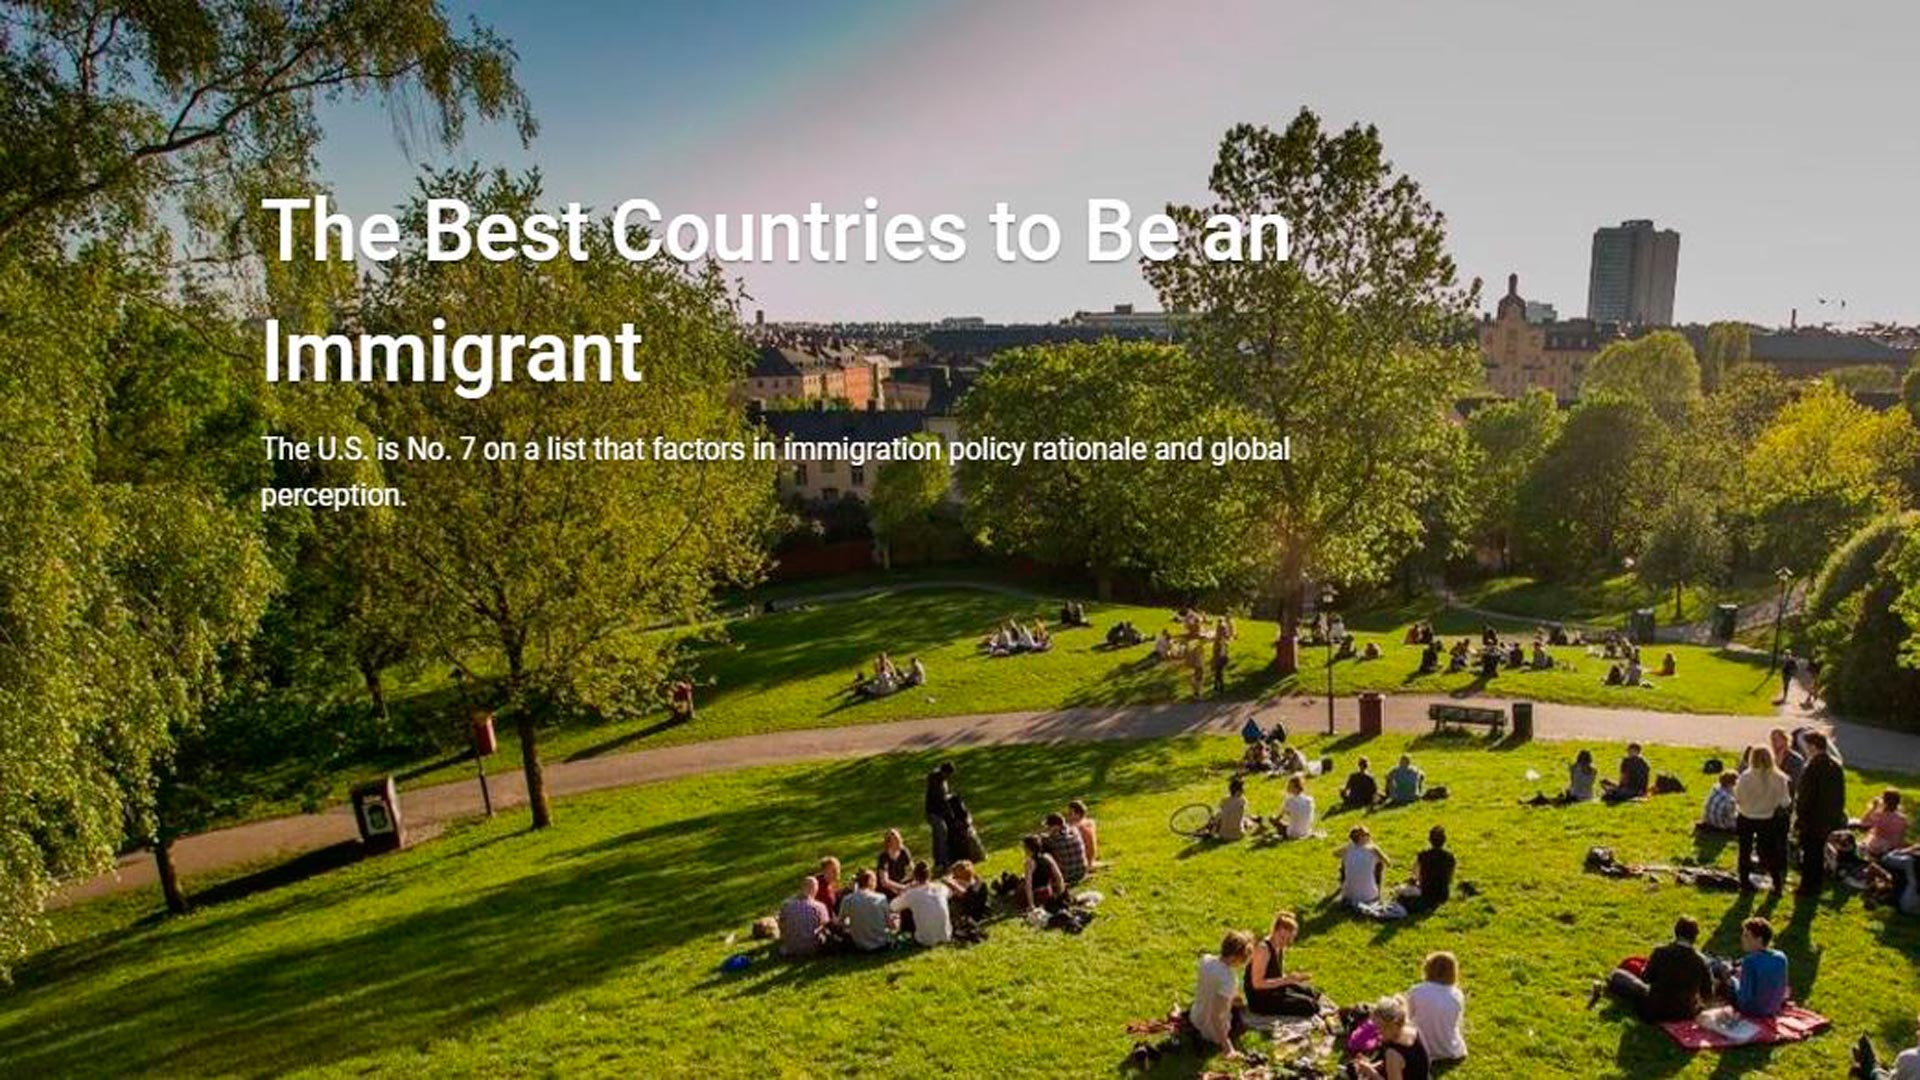 Suecia es el mejor país para inmigrar